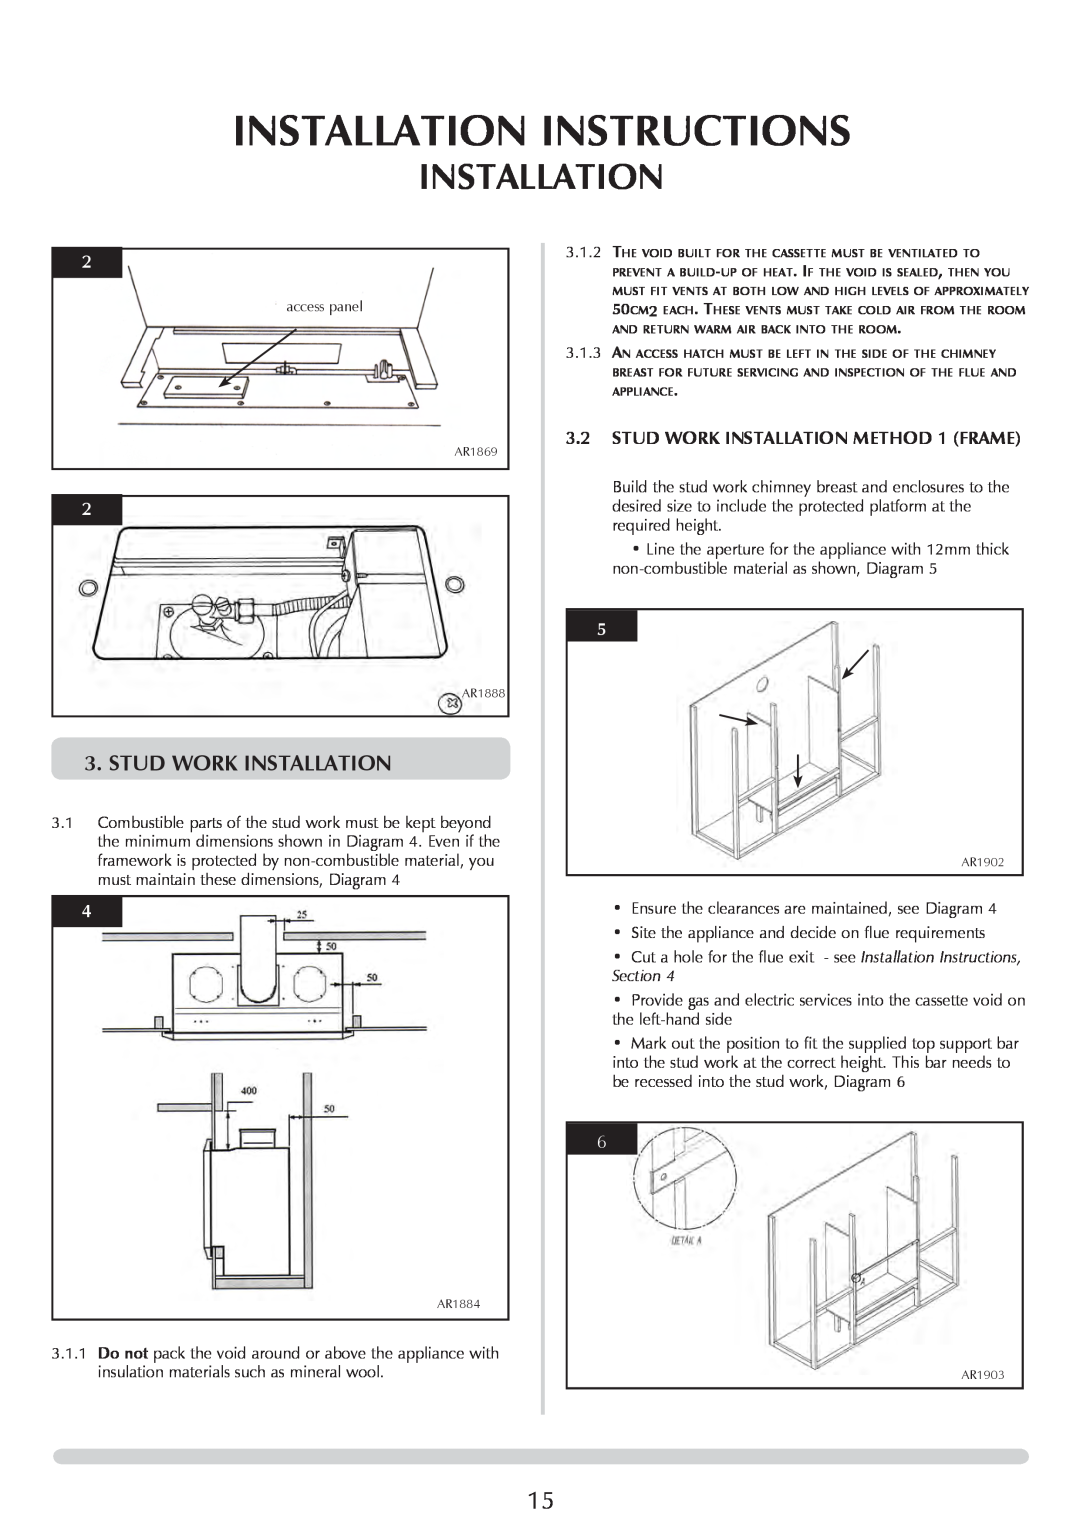 Stovax PR0919 manual Stud Work Installation, Installation Instructions 